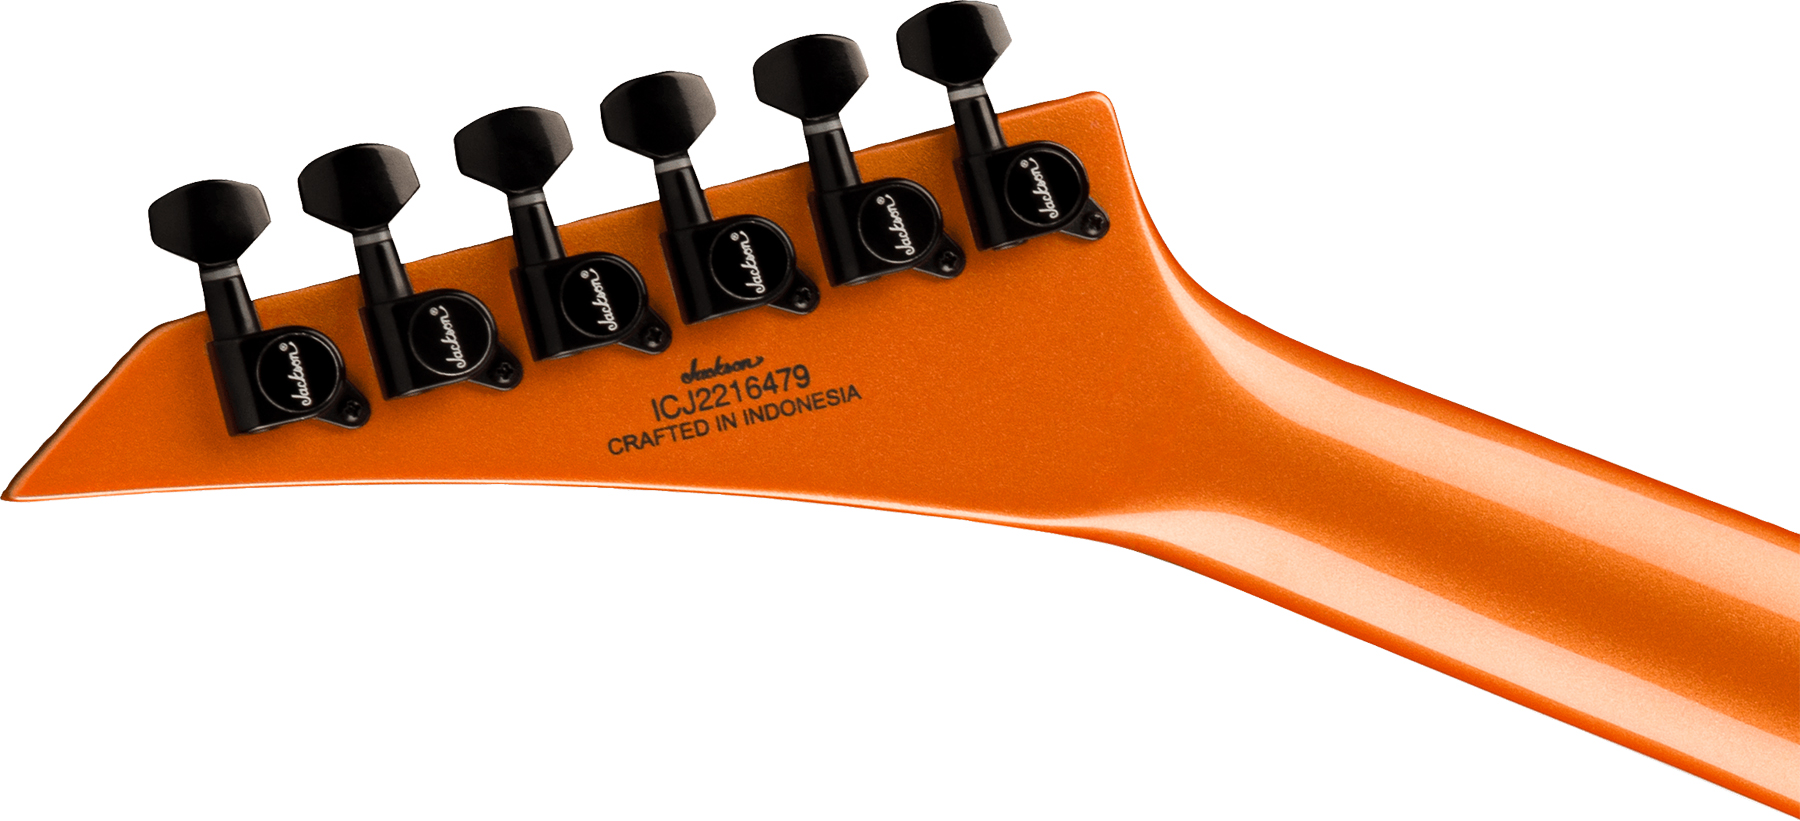 Jackson Soloist Sl3x Dx Hstst Fr Lau - Lambo Orange - Guitarra eléctrica con forma de str. - Variation 3